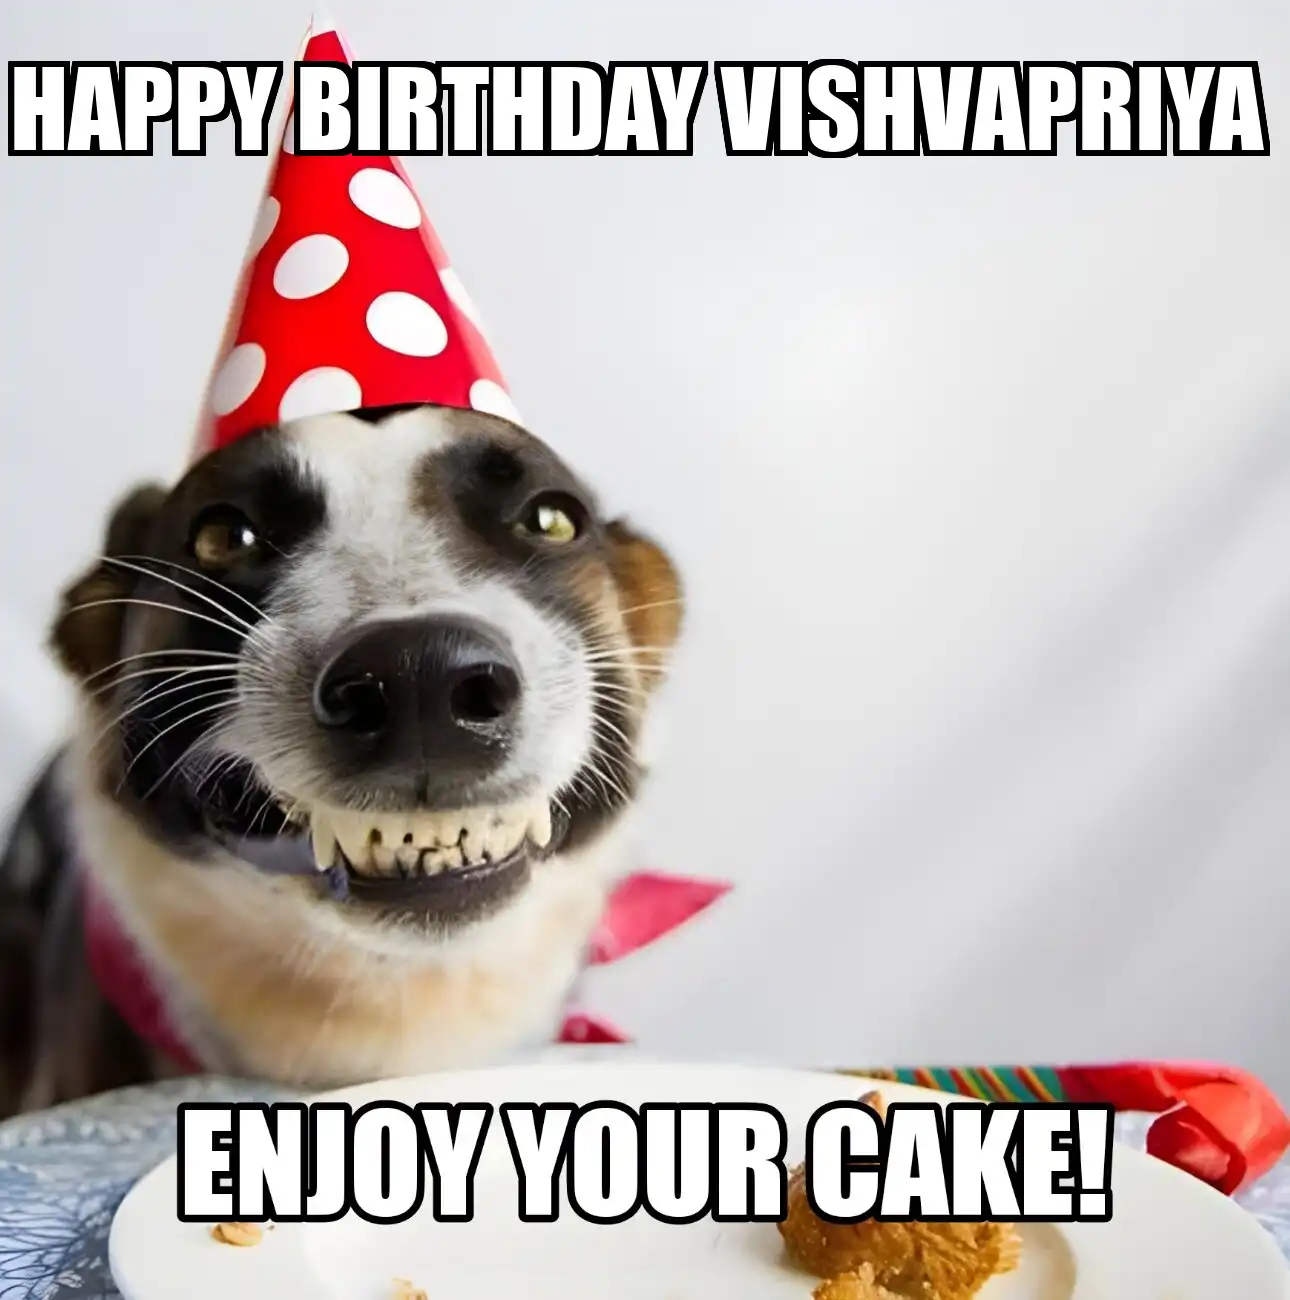 Happy Birthday Vishvapriya Enjoy Your Cake Dog Meme